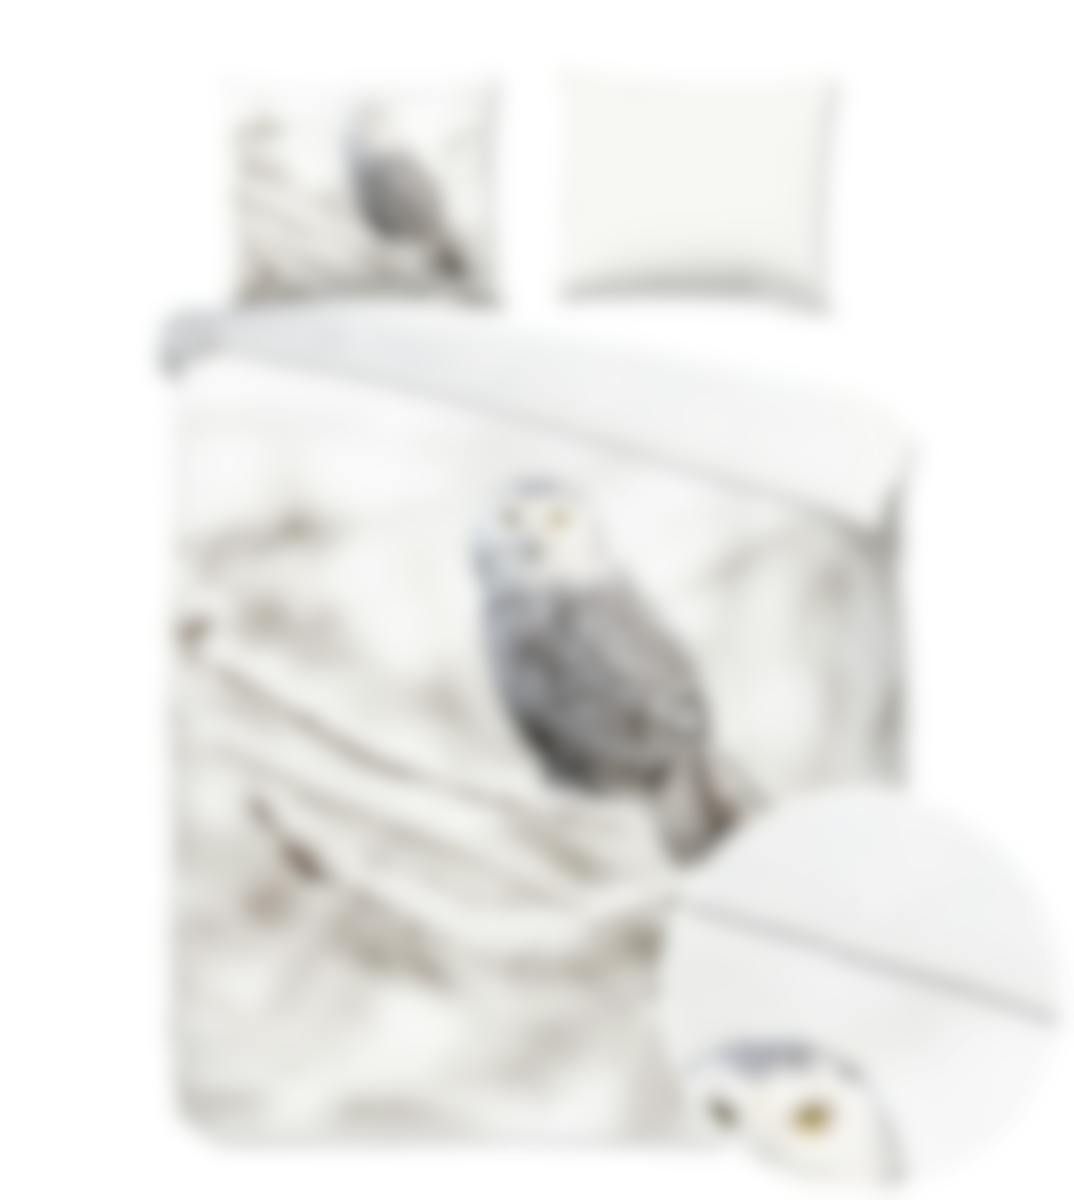 Good Morning dekbedovertrek Snowy Owl White Flanel